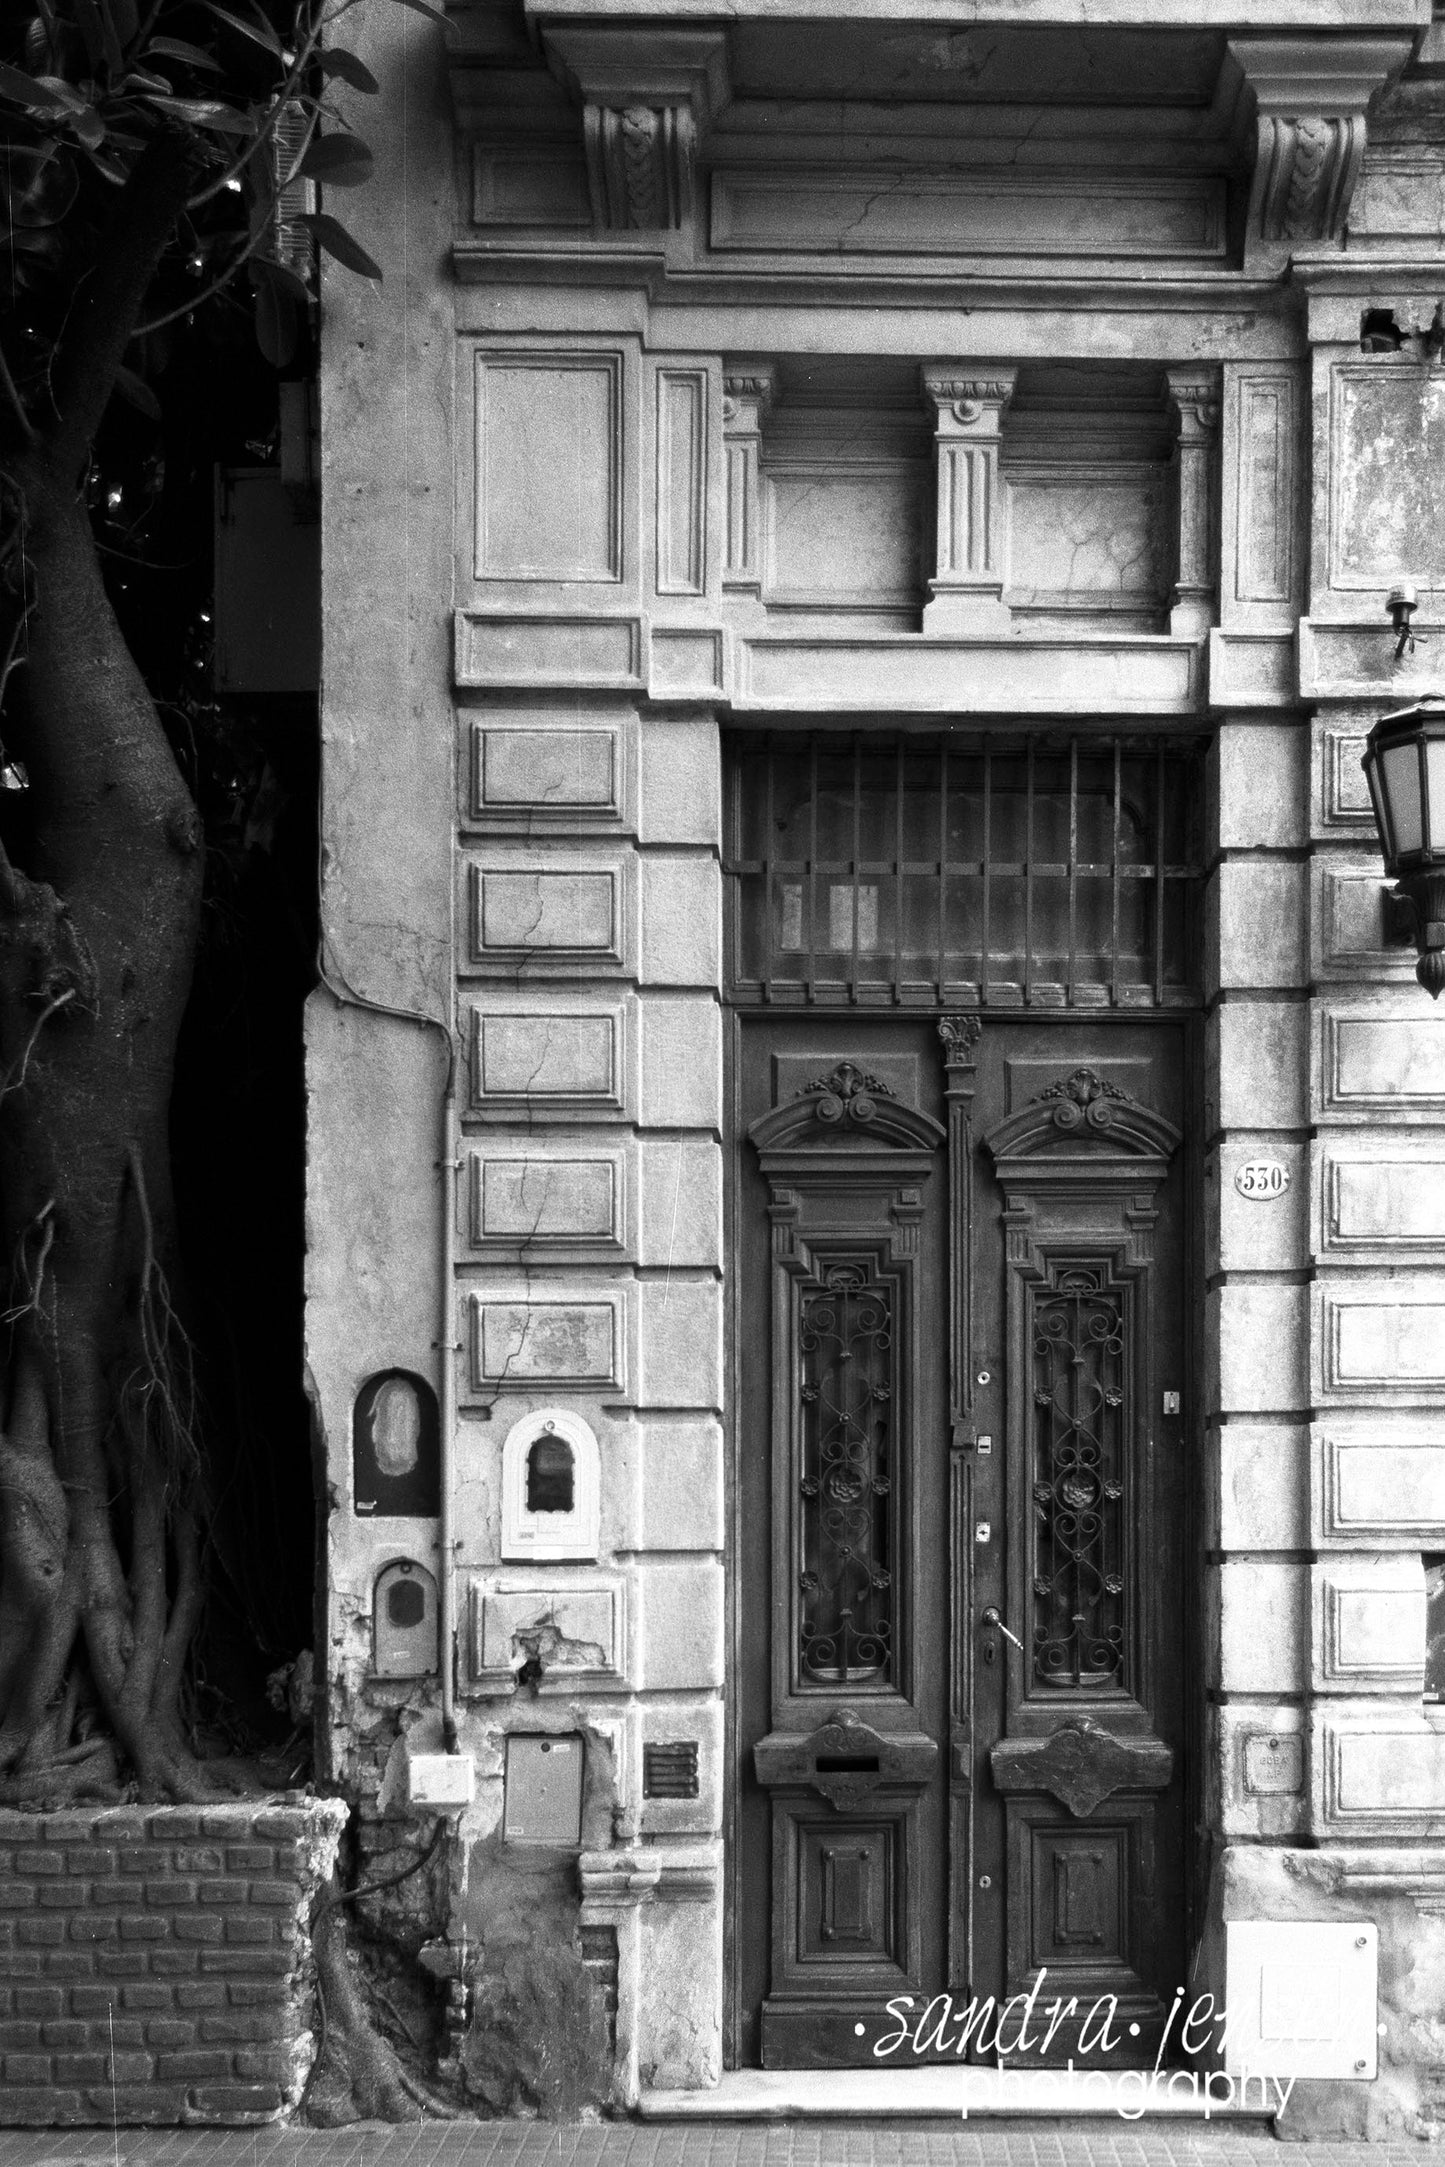 Print - Buenos Aires "Doorway"